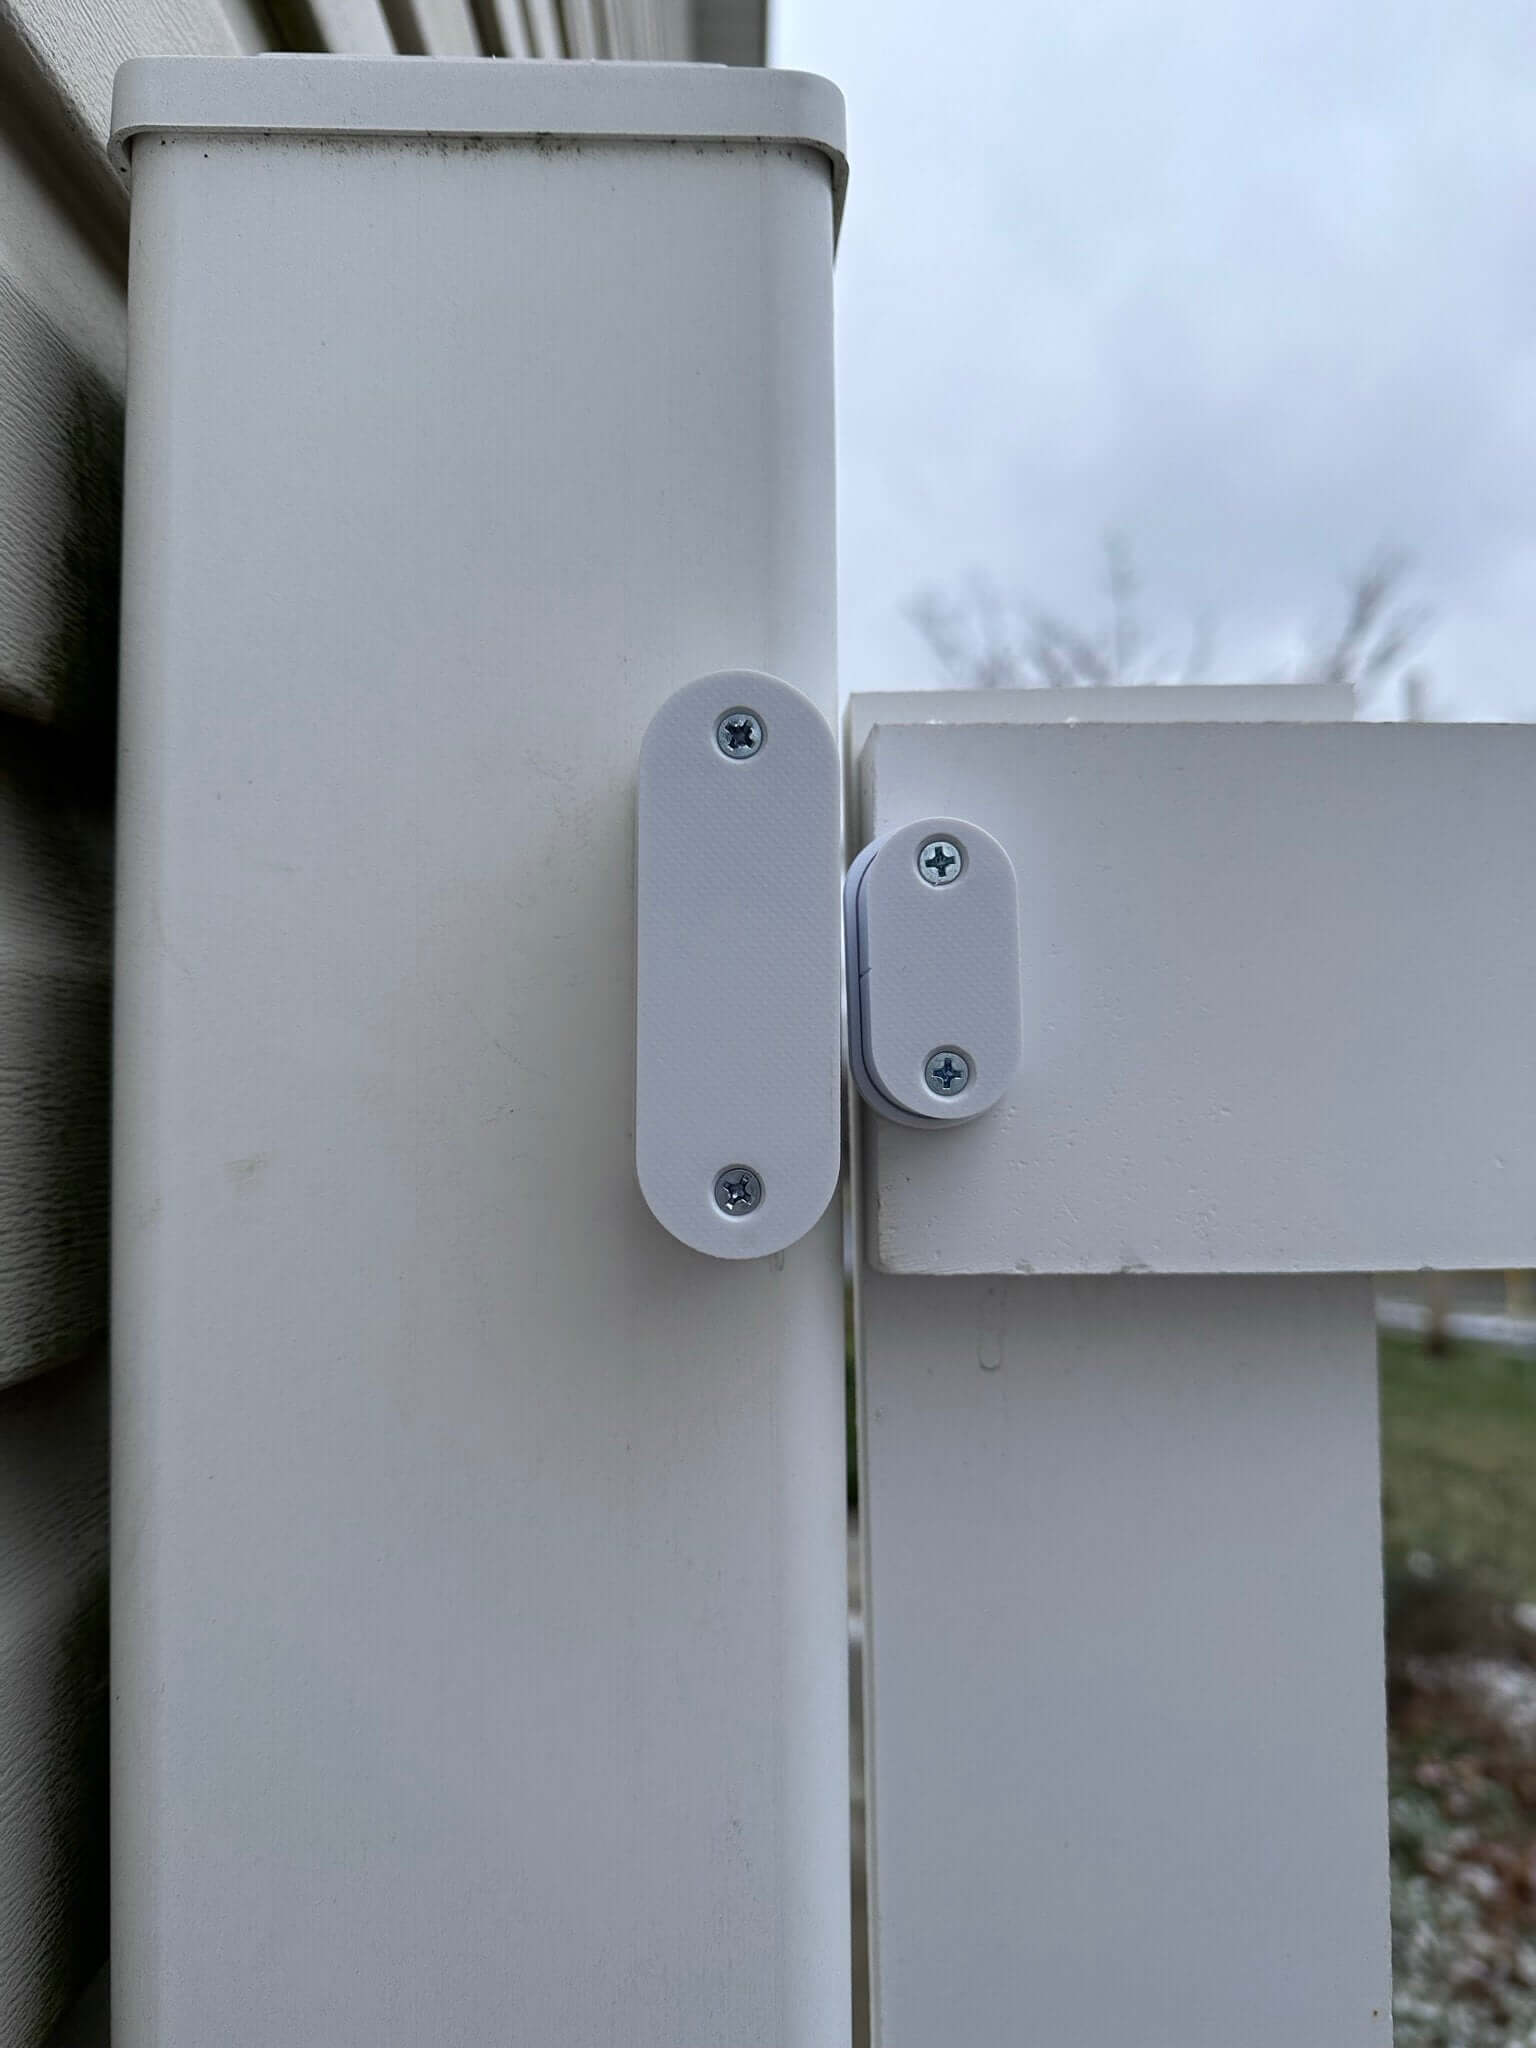 Weatherproof Enclosure for Eve Door & Window Wireless Contact Sensor